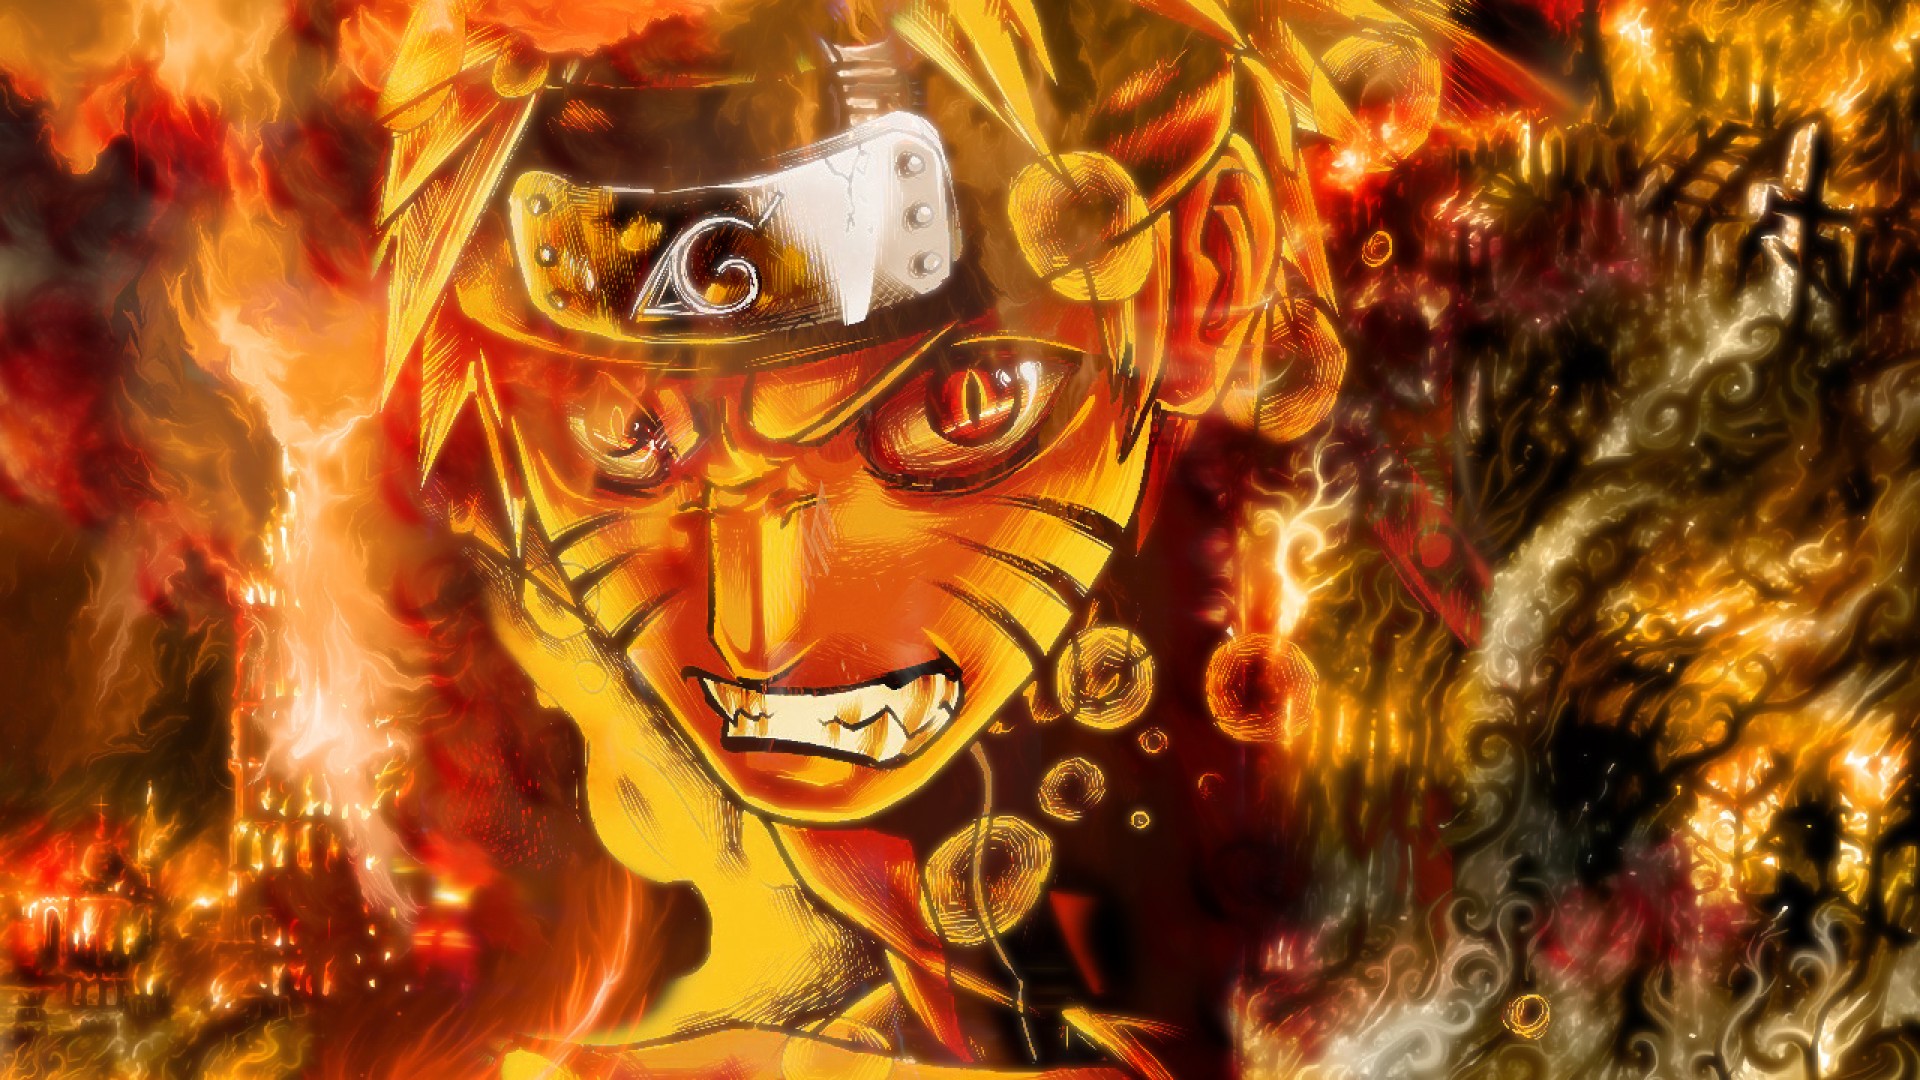 48+] Naruto Wallpaper Download - WallpaperSafari